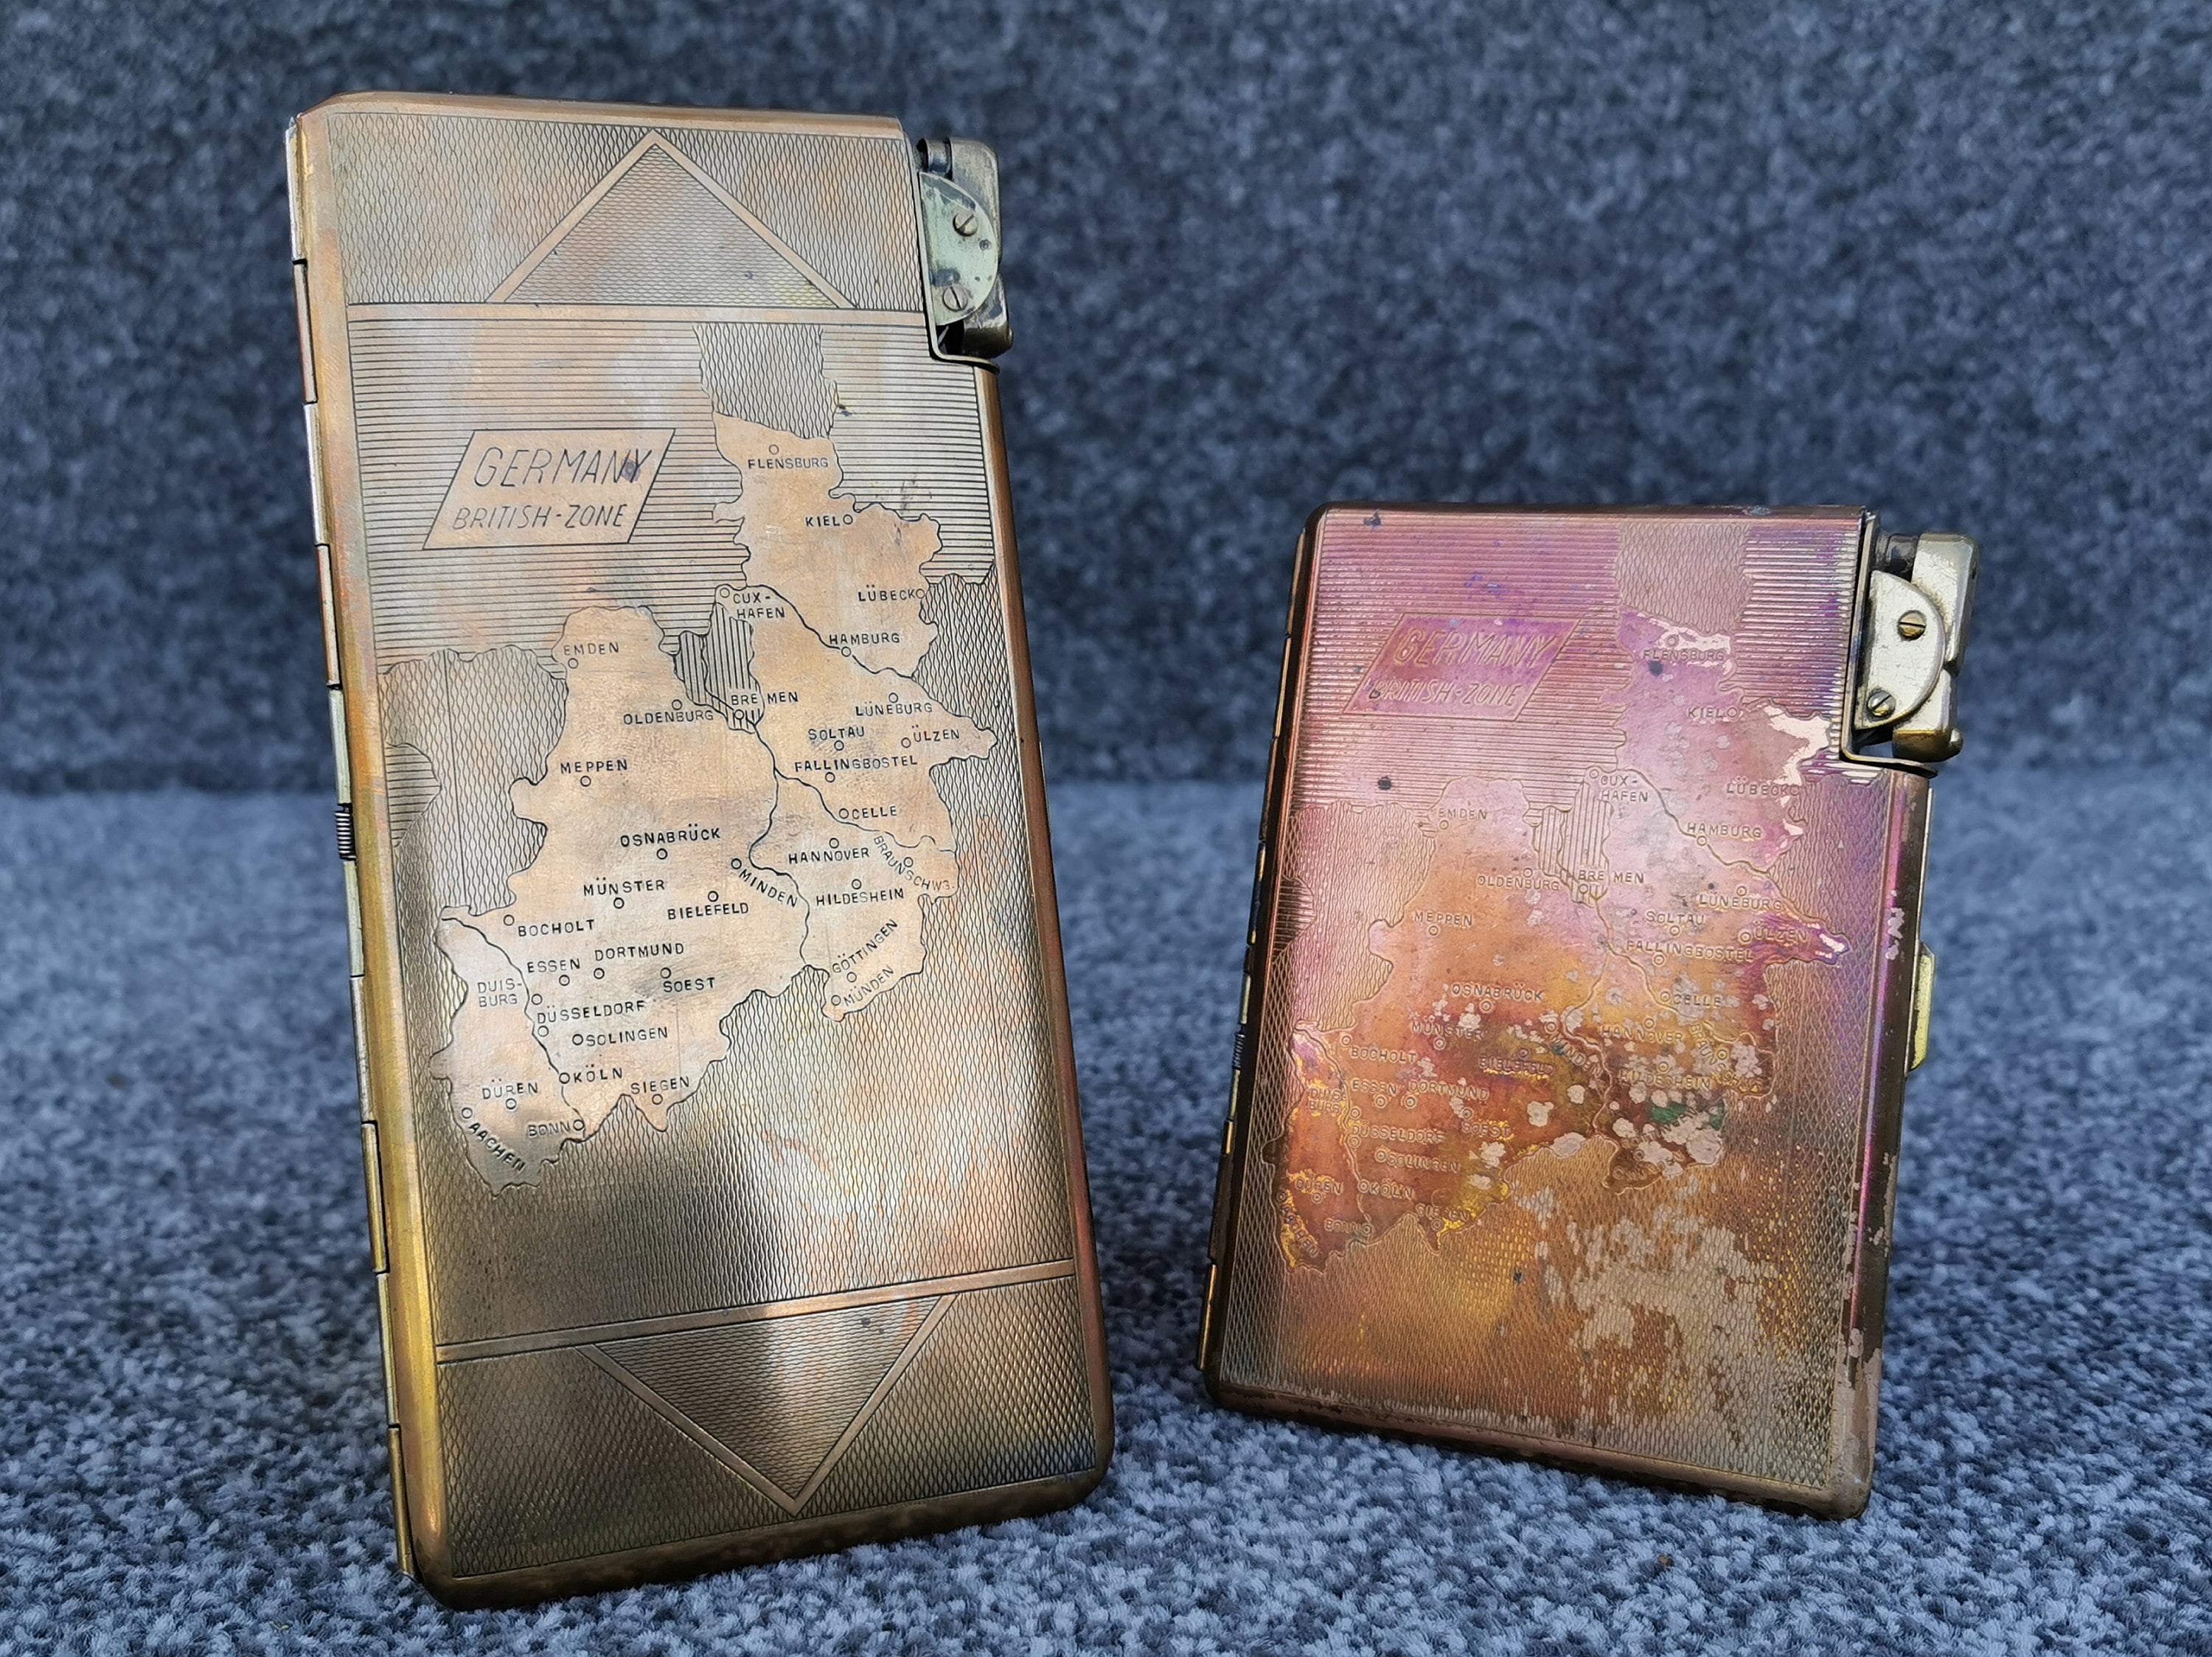 Vintage cigarette case – leather & brass